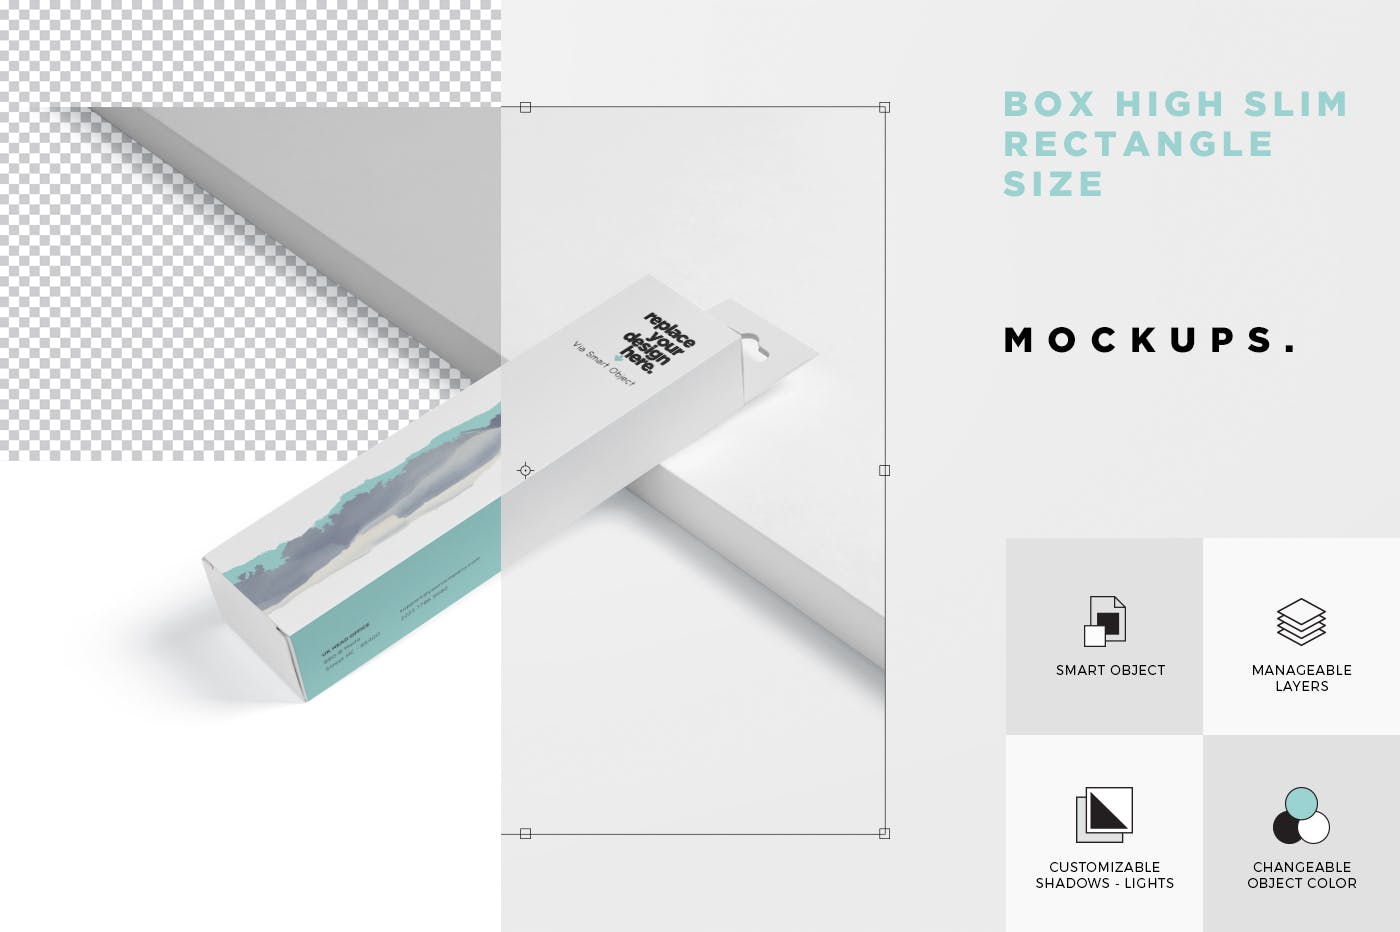 超薄矩形长条包装盒外观设计效果图素材库精选 Box Mockup PSDs – High Slim Rectangle Size Hanger插图(6)